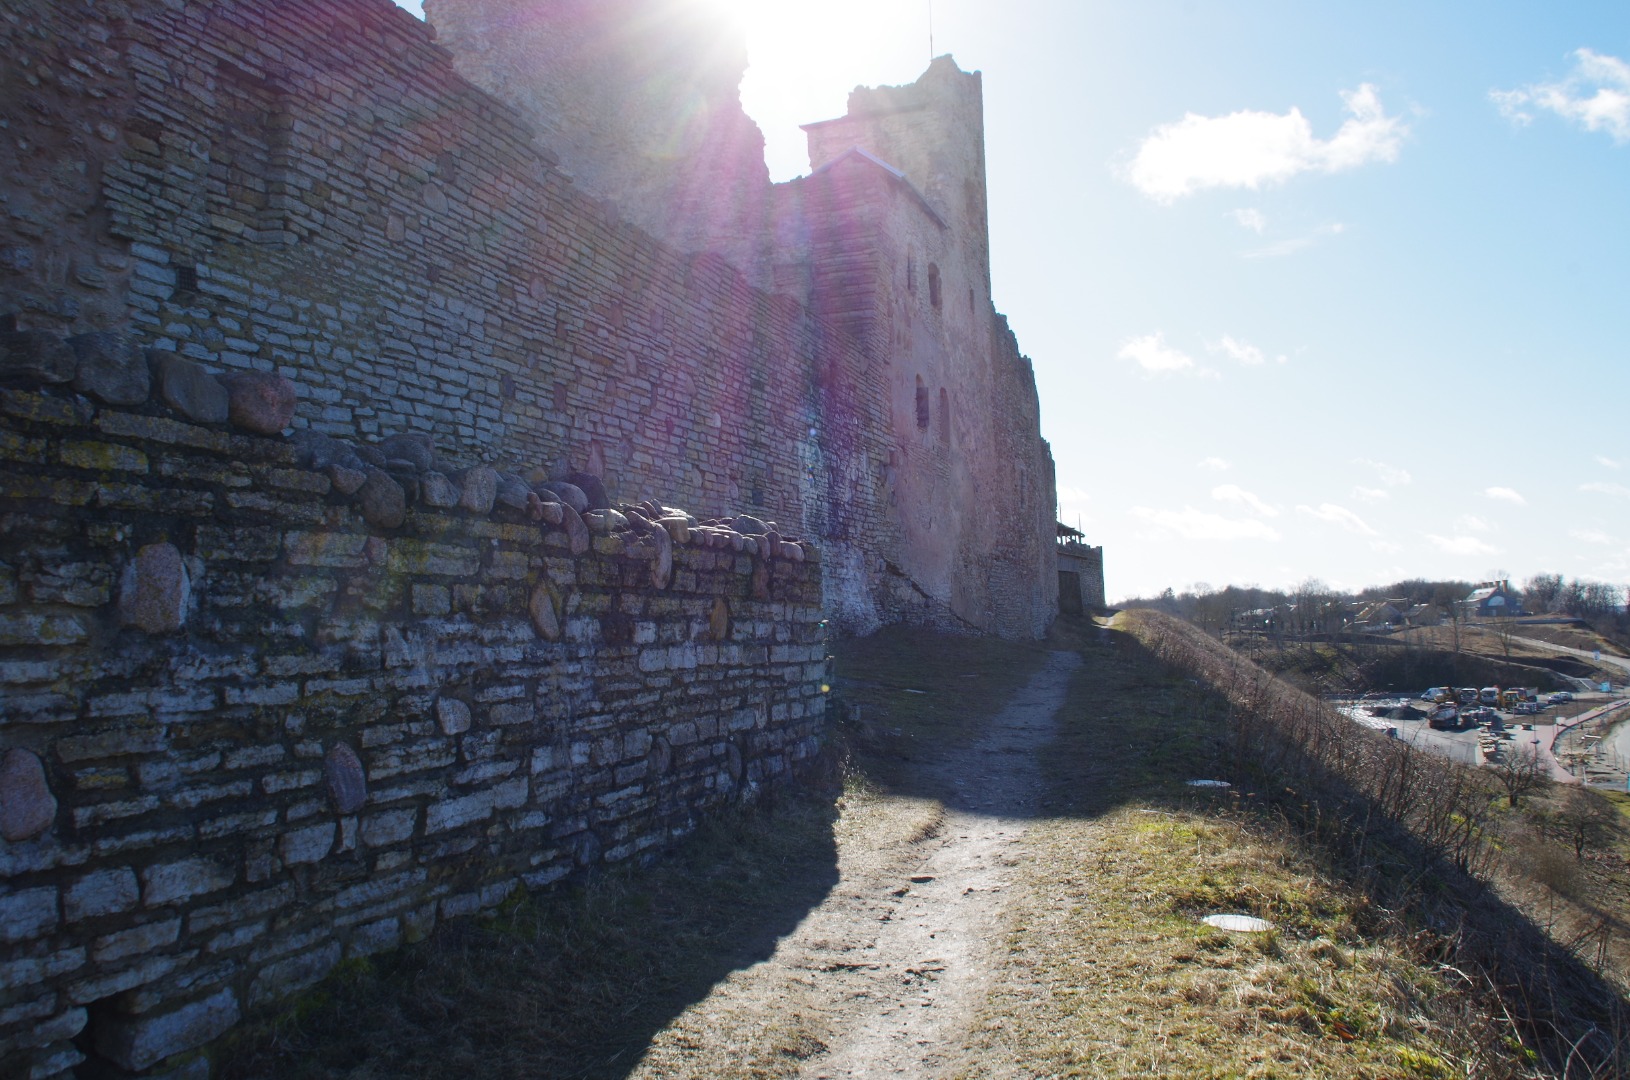 Rakvere-castle-ruins - rkv fortress, Rakvere fortress Location: Rakvere rephoto